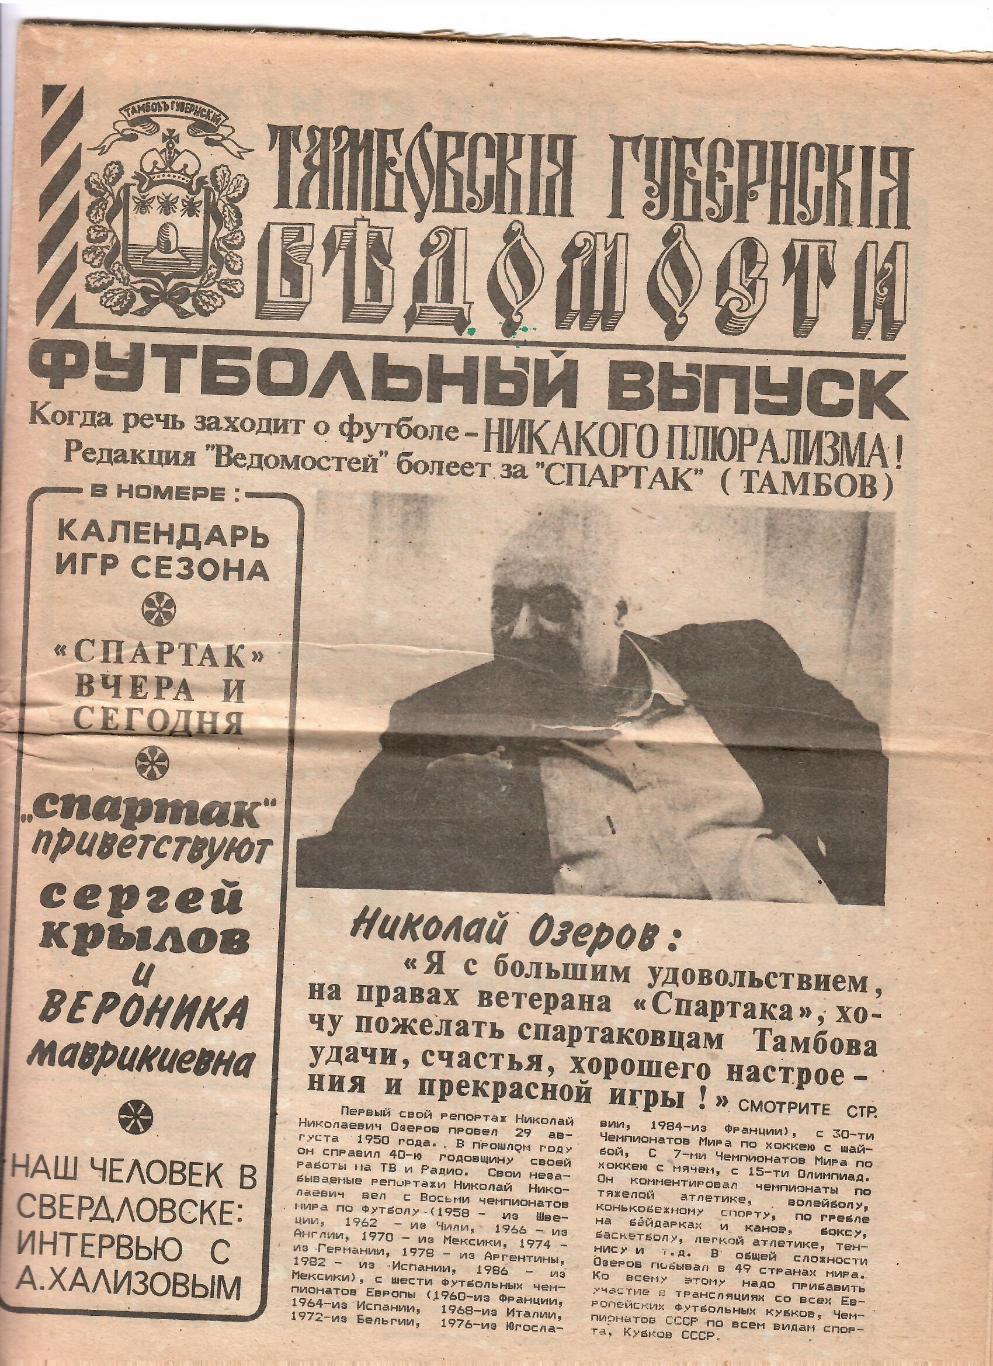 Тамбов 1991 Футбольный выпуск газеты Ведомости